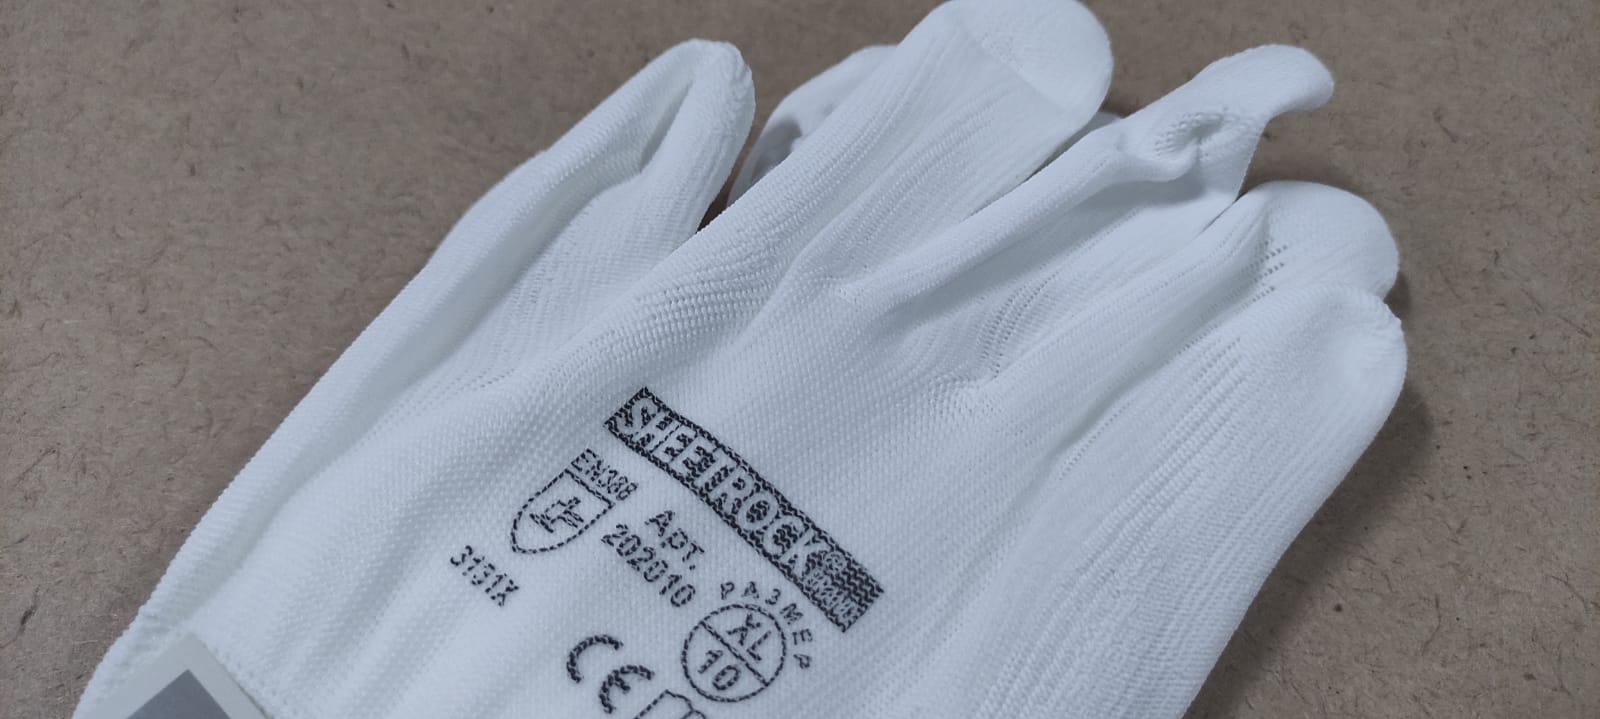 Рабочие защитные строительные перчатки Sheetrock белые полиэстер с обивкой из полиуретана, размер XL